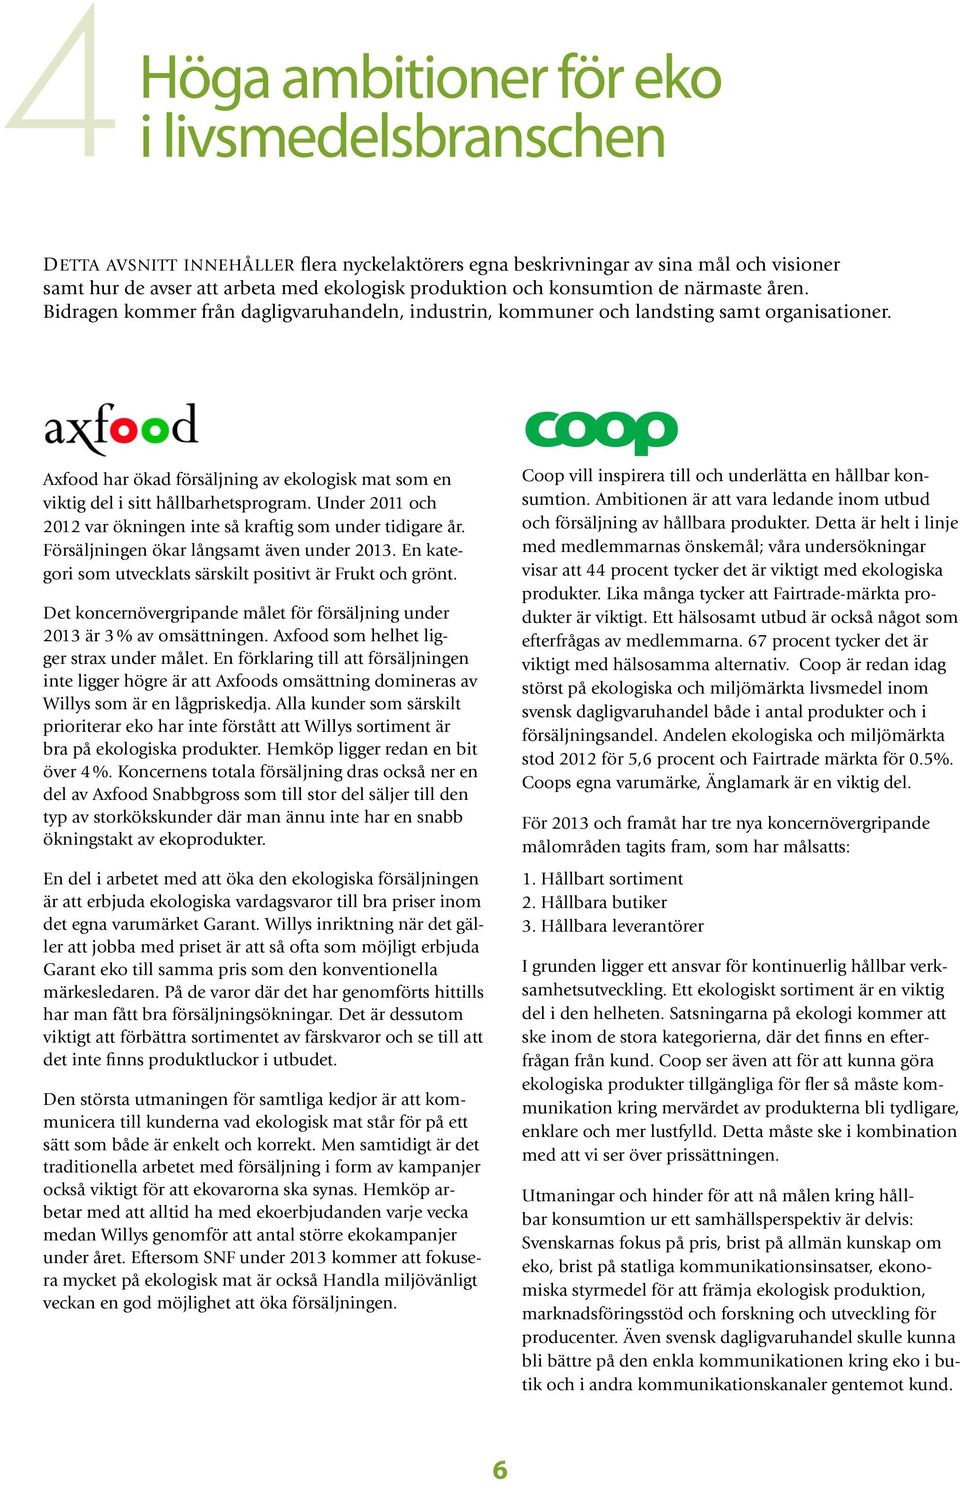 Axfood har ökad försäljning av ekologisk mat som en viktig del i sitt hållbarhetsprogram. Under 2011 och 2012 var ökningen inte så kraftig som under tidigare år.